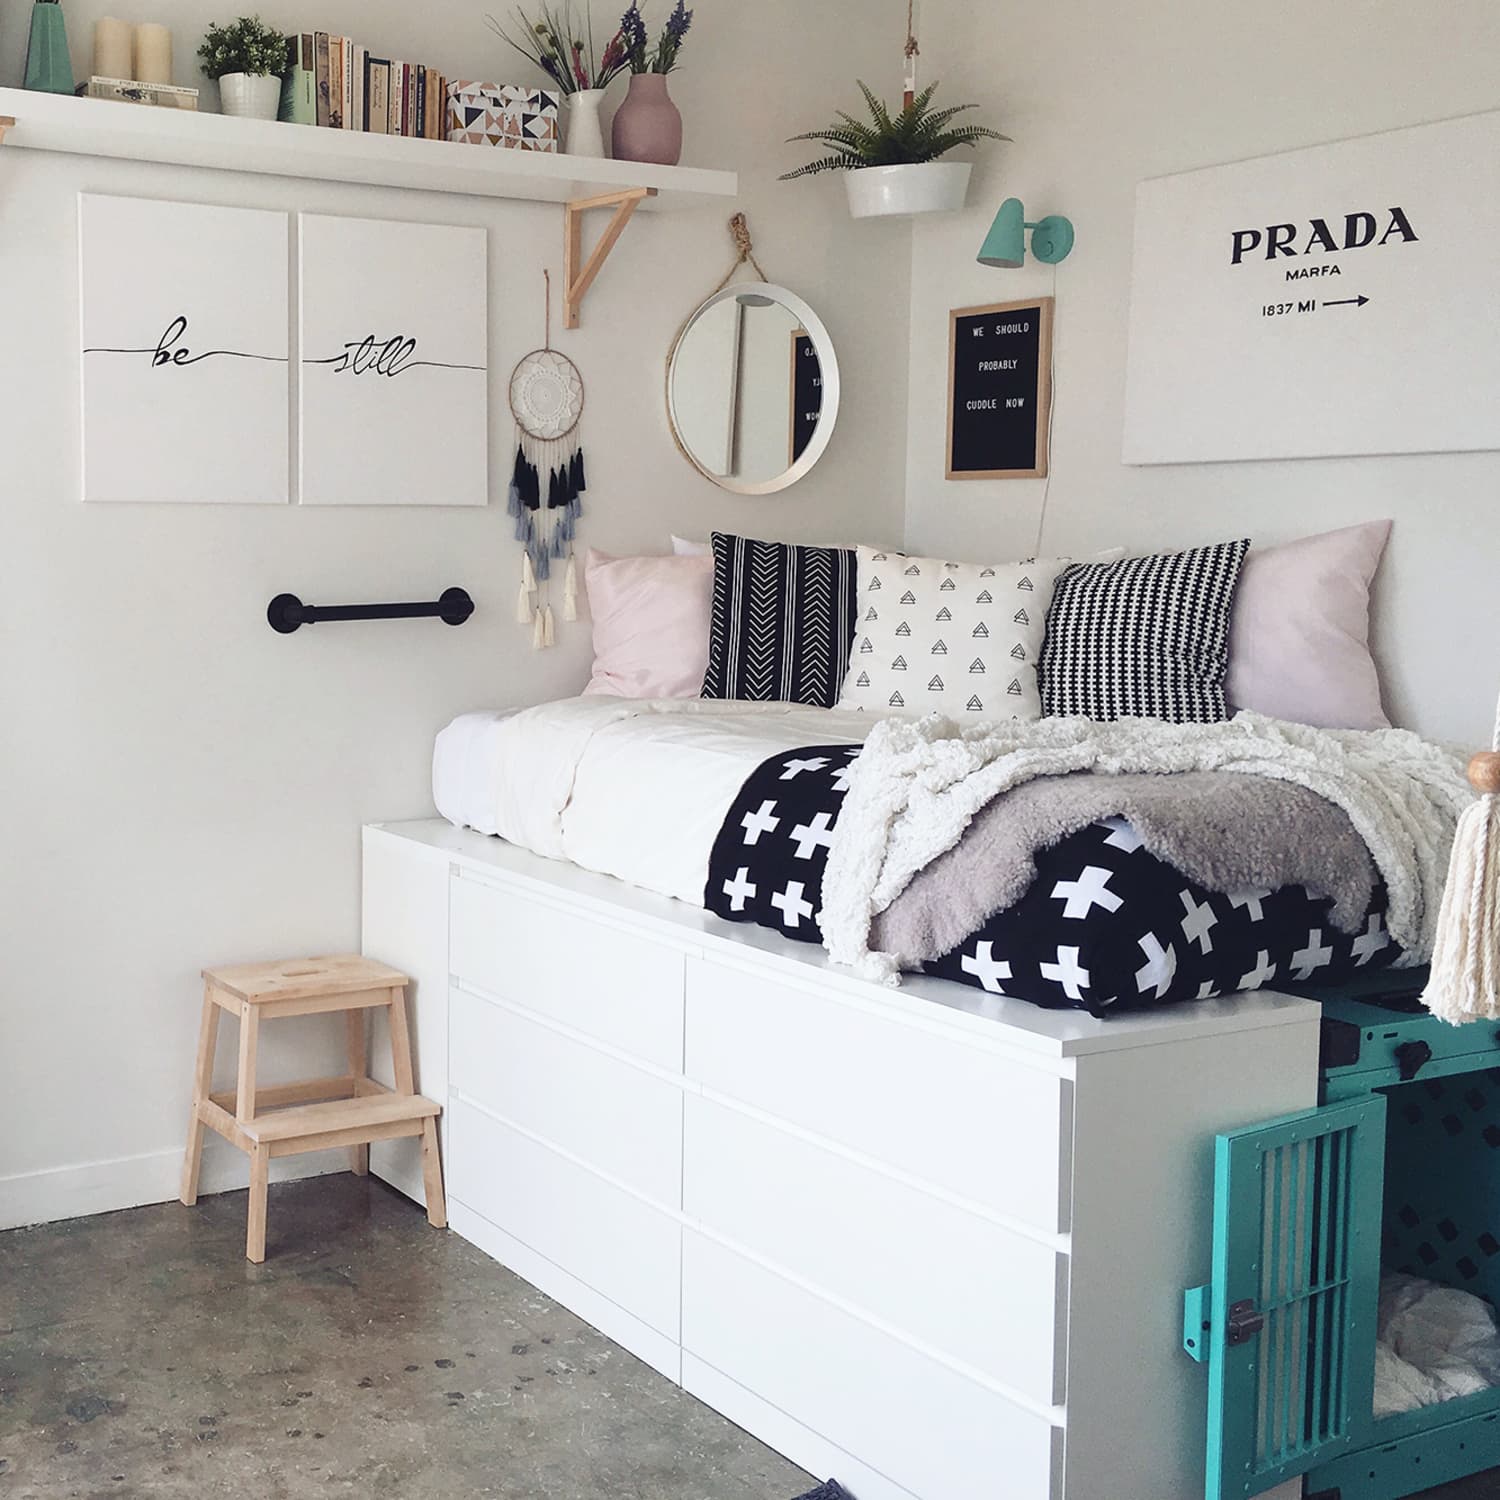 De waarheid vertellen potlood Verstikken 9 IKEA Platform Bed Hacks for More Storage | Apartment Therapy